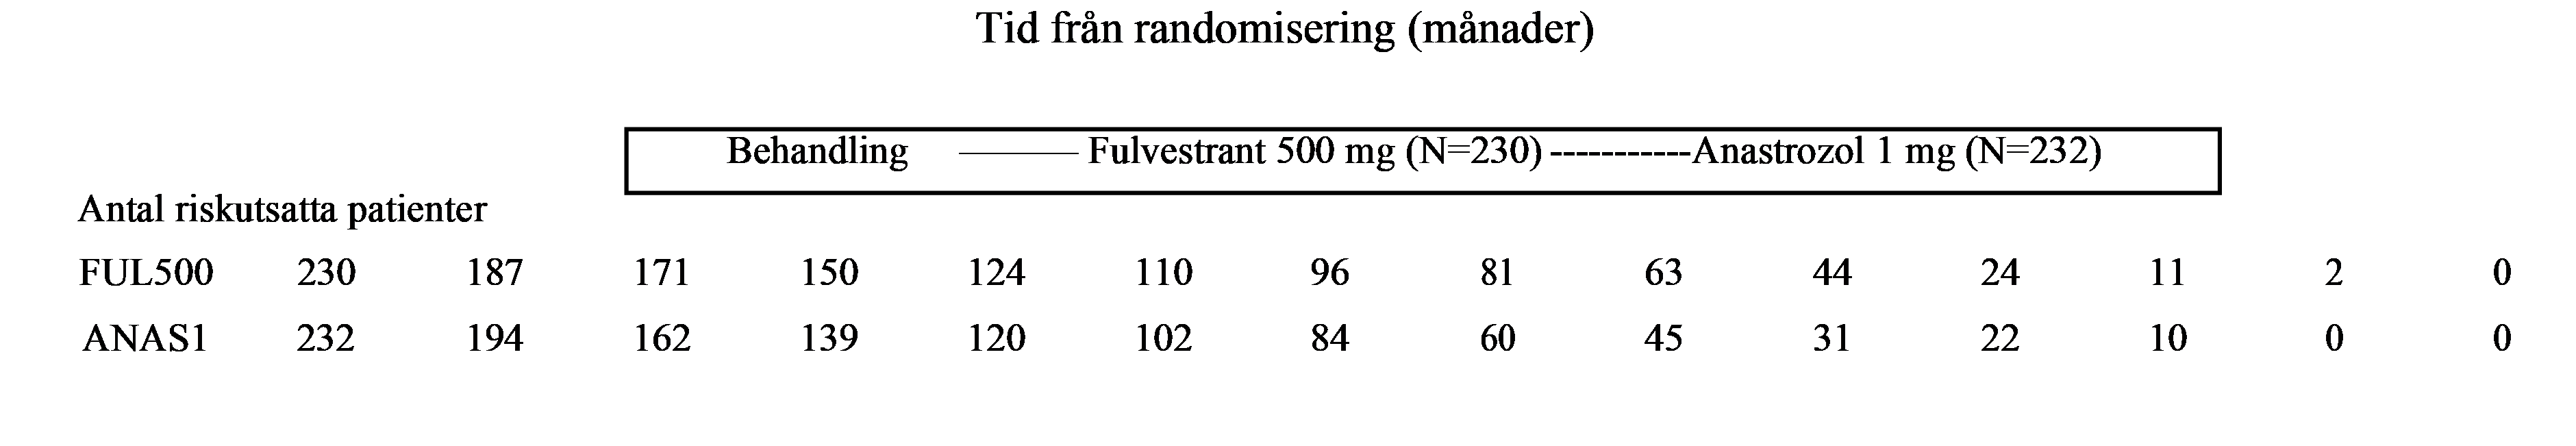 Figur 1: Kaplan Meier kurvor över total överlevnad (EFC6193)